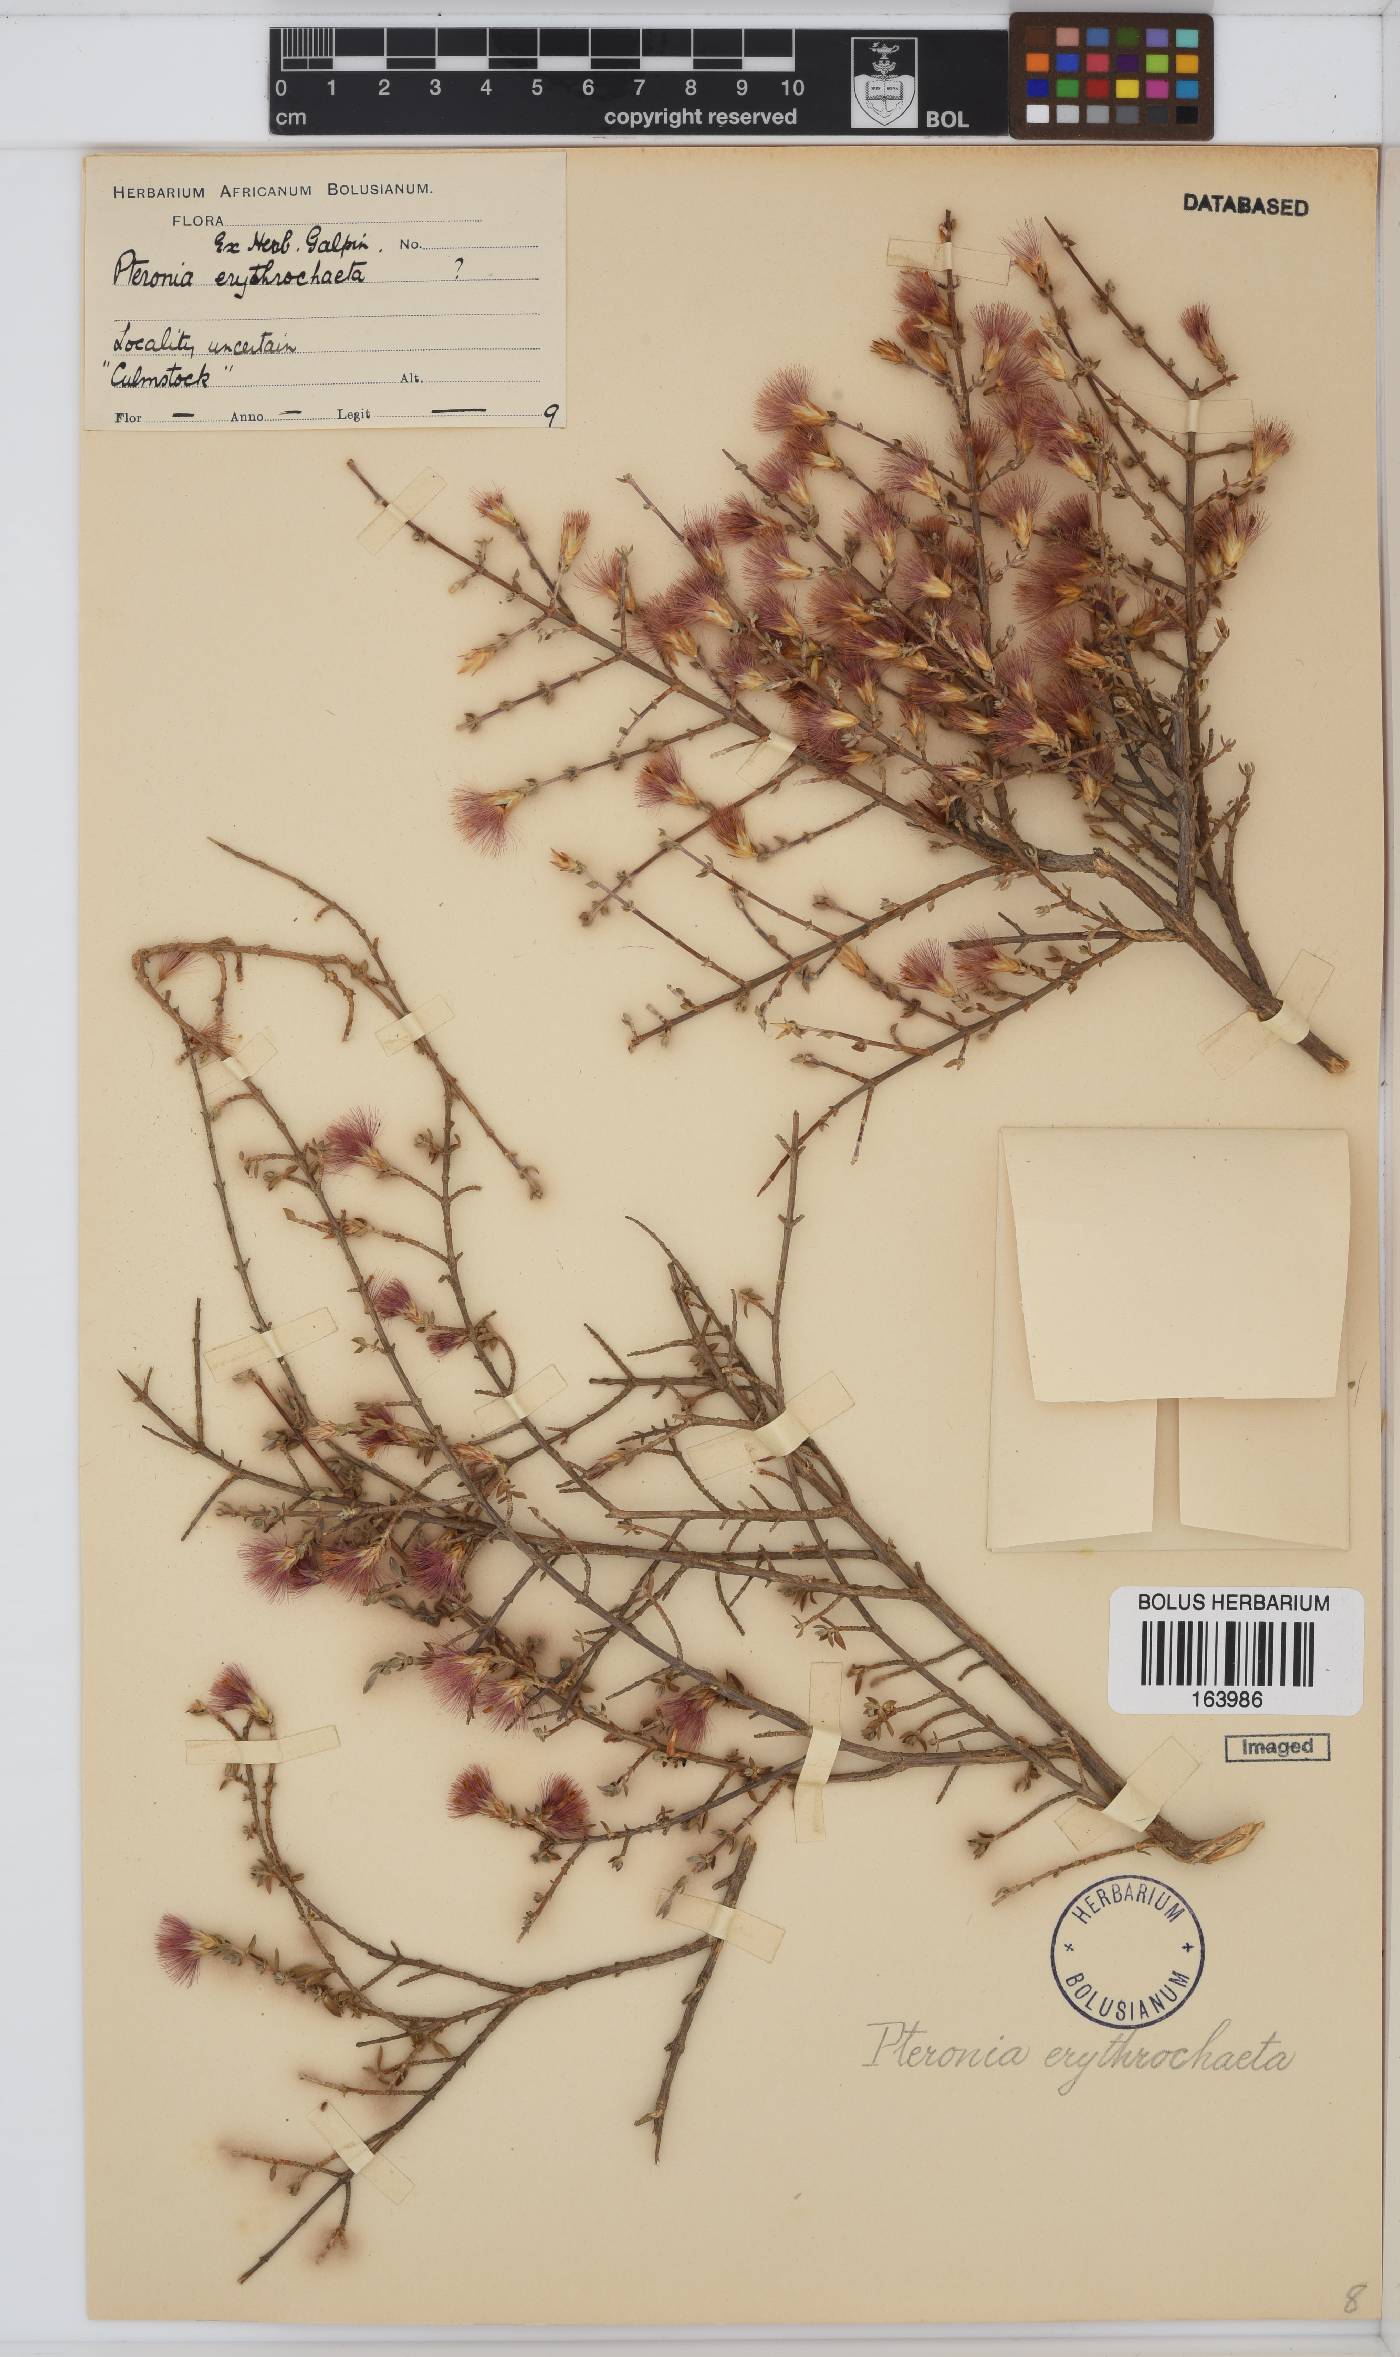 Pteronia erythrochaeta image